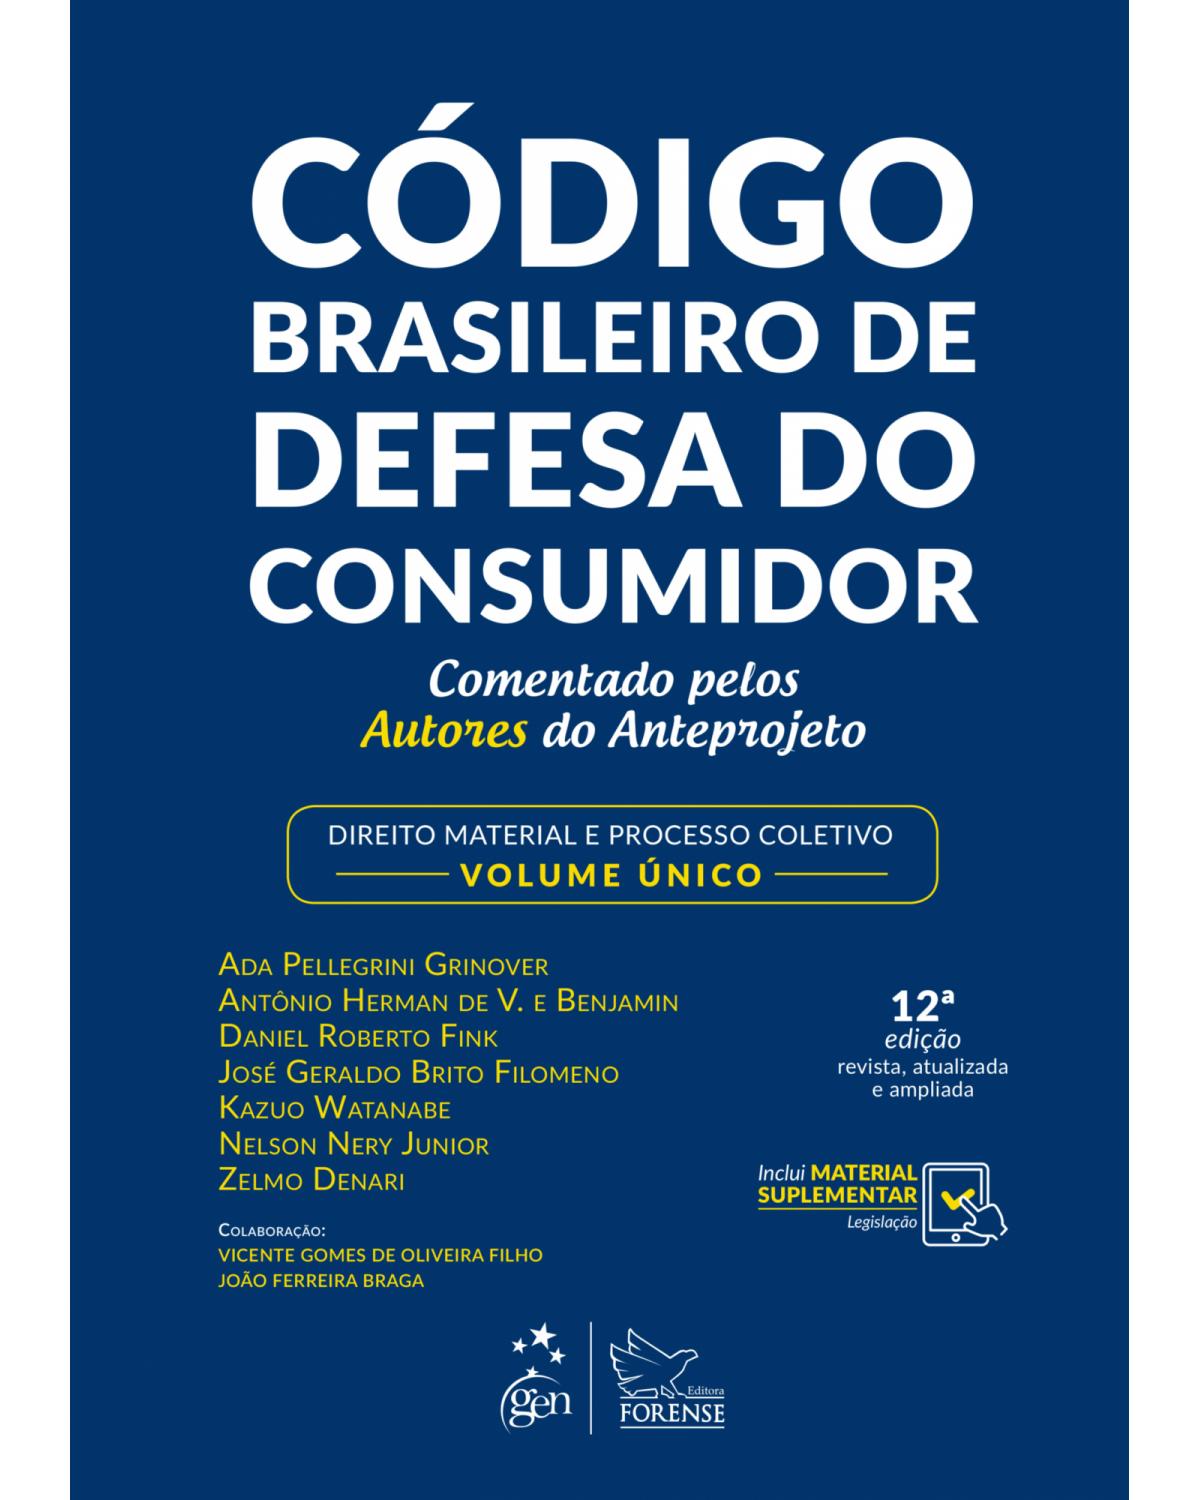 Código brasileiro de defesa do consumidor - comentado pelos autores do anteprojeto - Direito material e processo coletivo - 12ª Edição | 2019